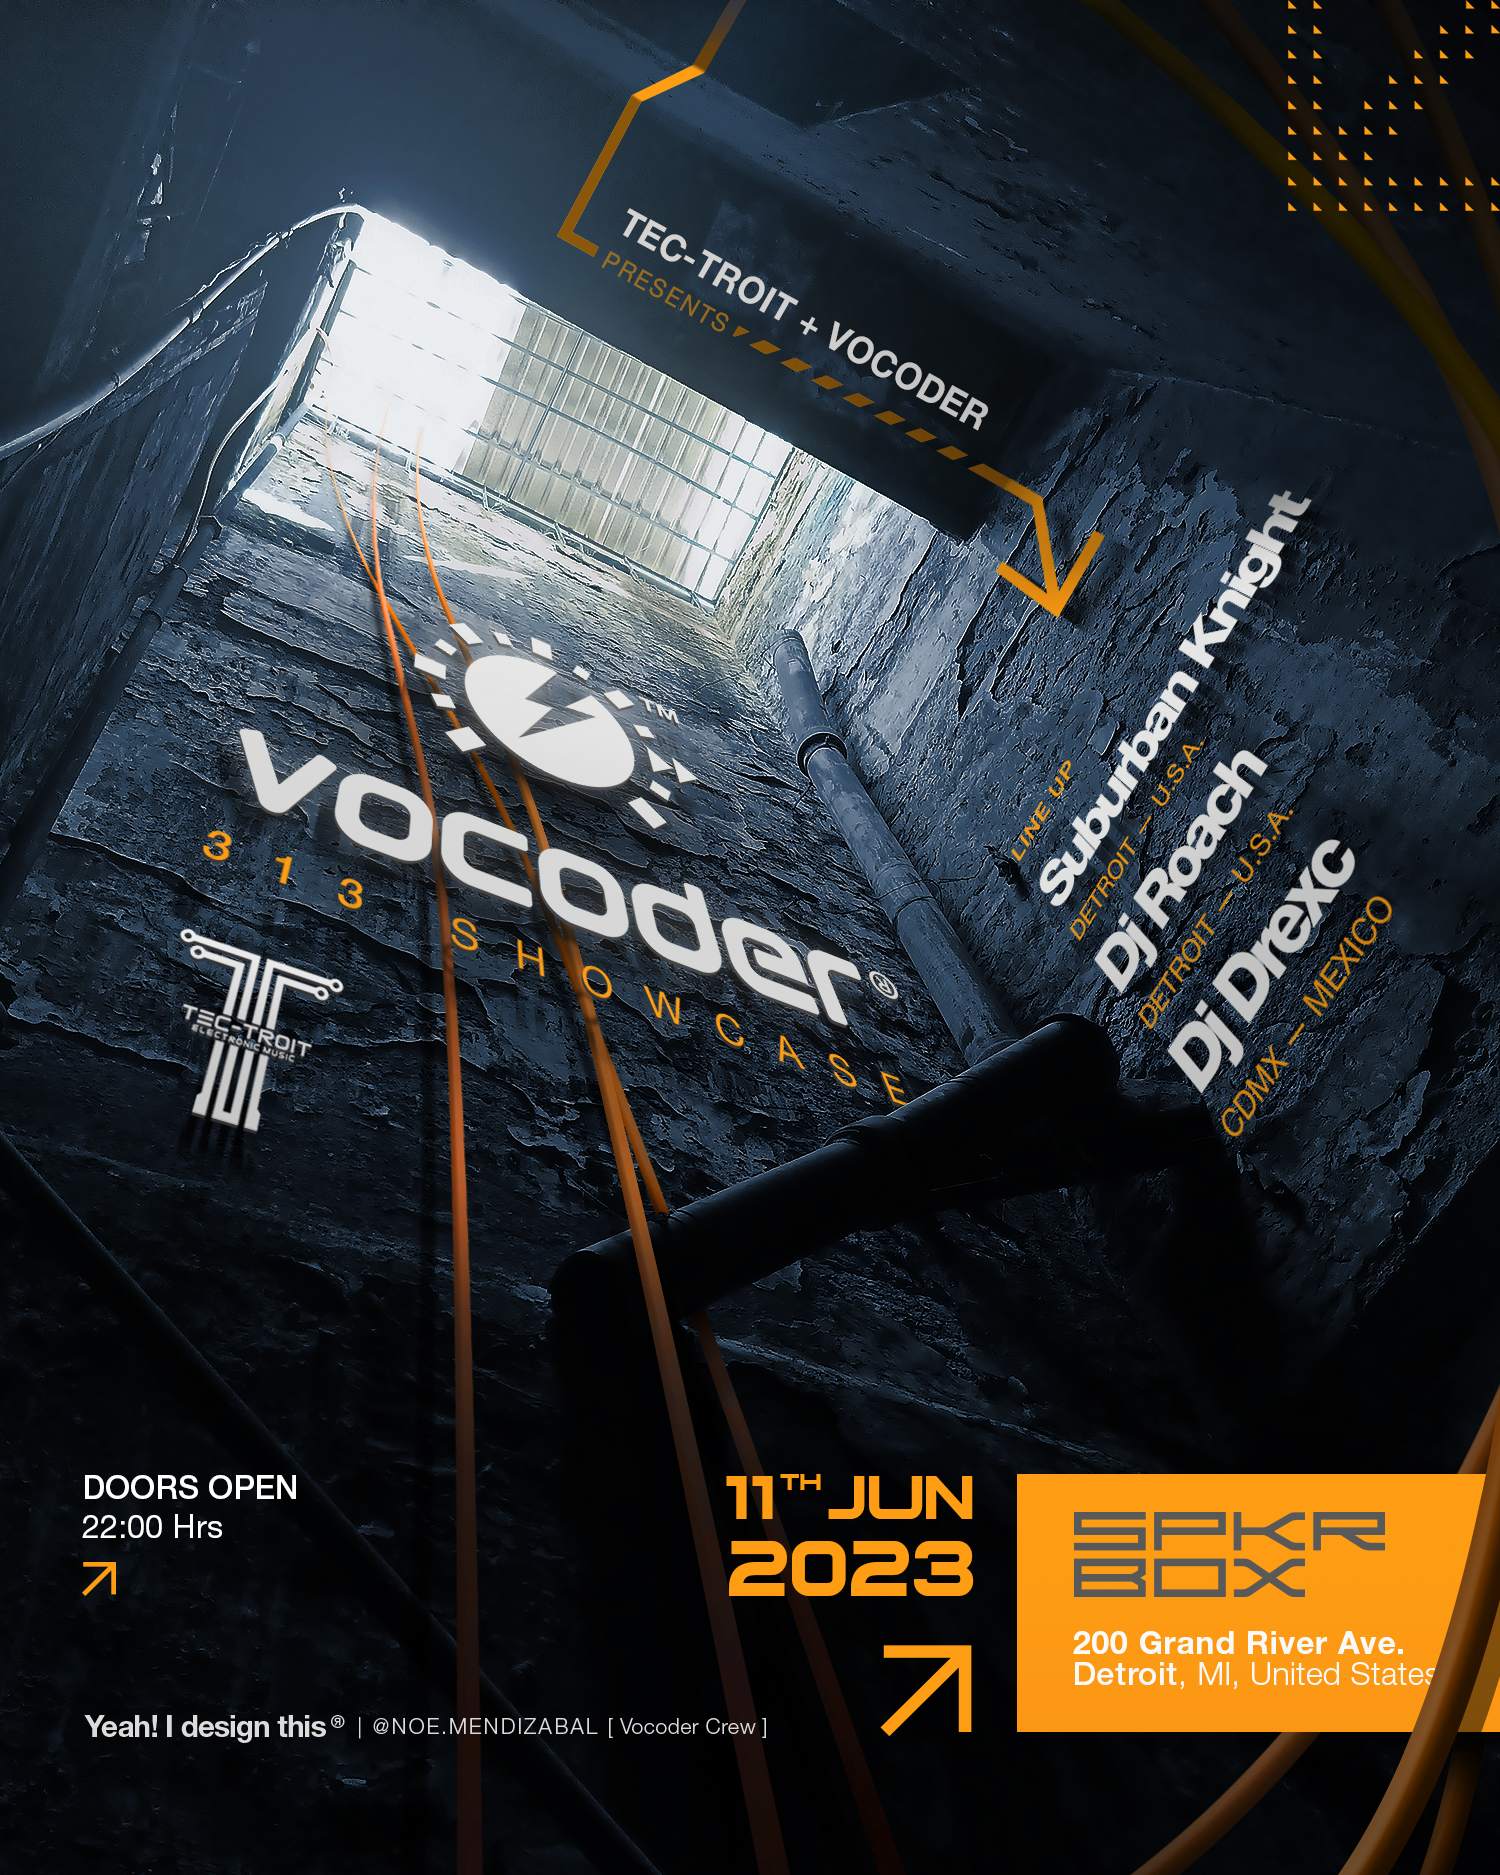 Vocoder 313 Showcase - フライヤー表